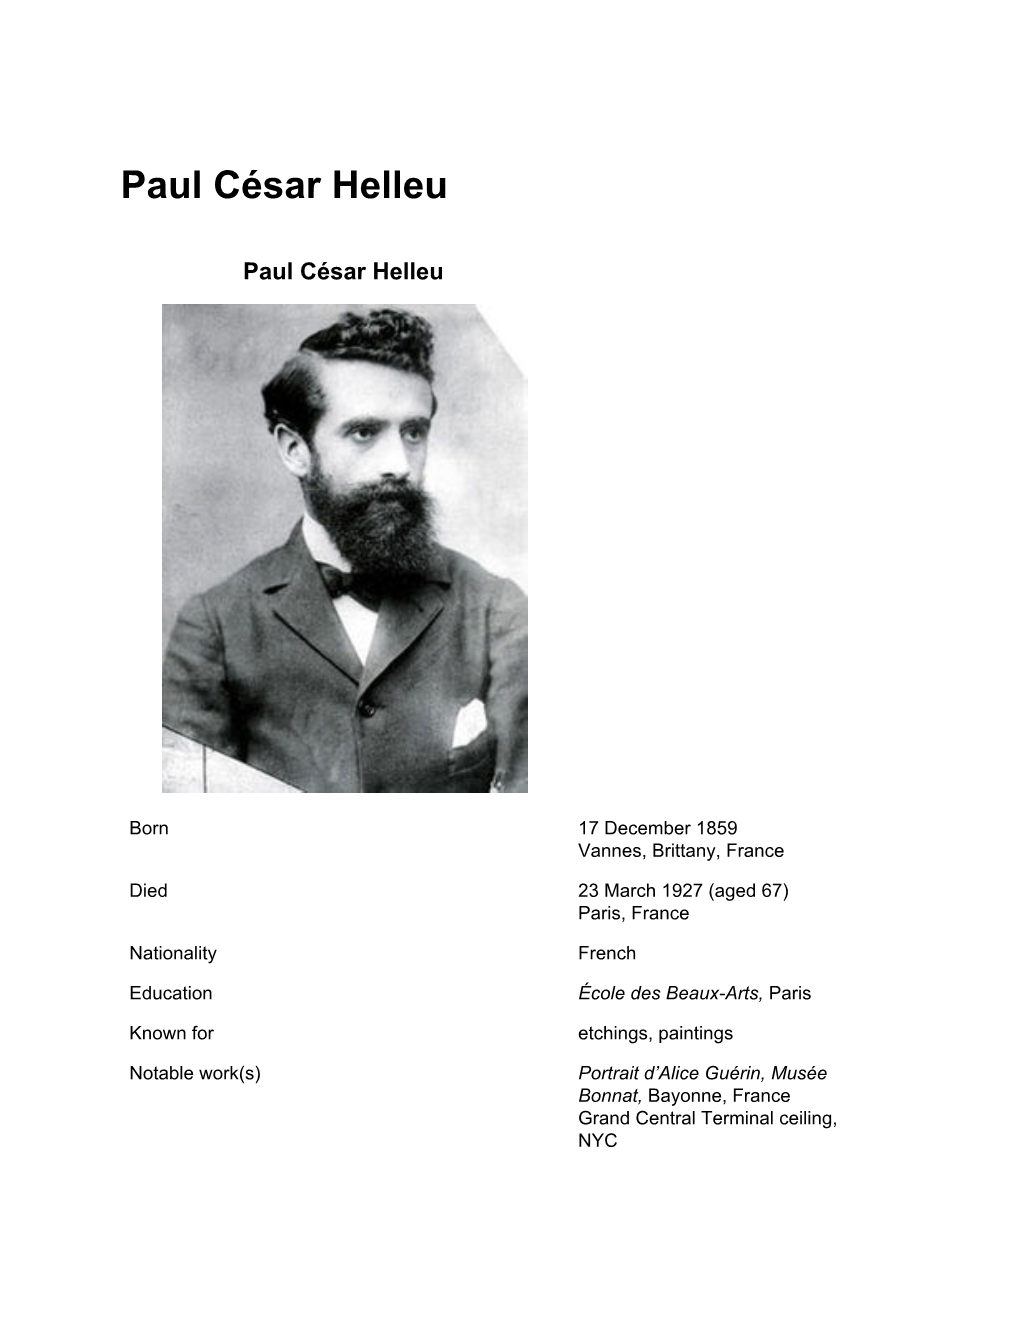 Paul César Helleu